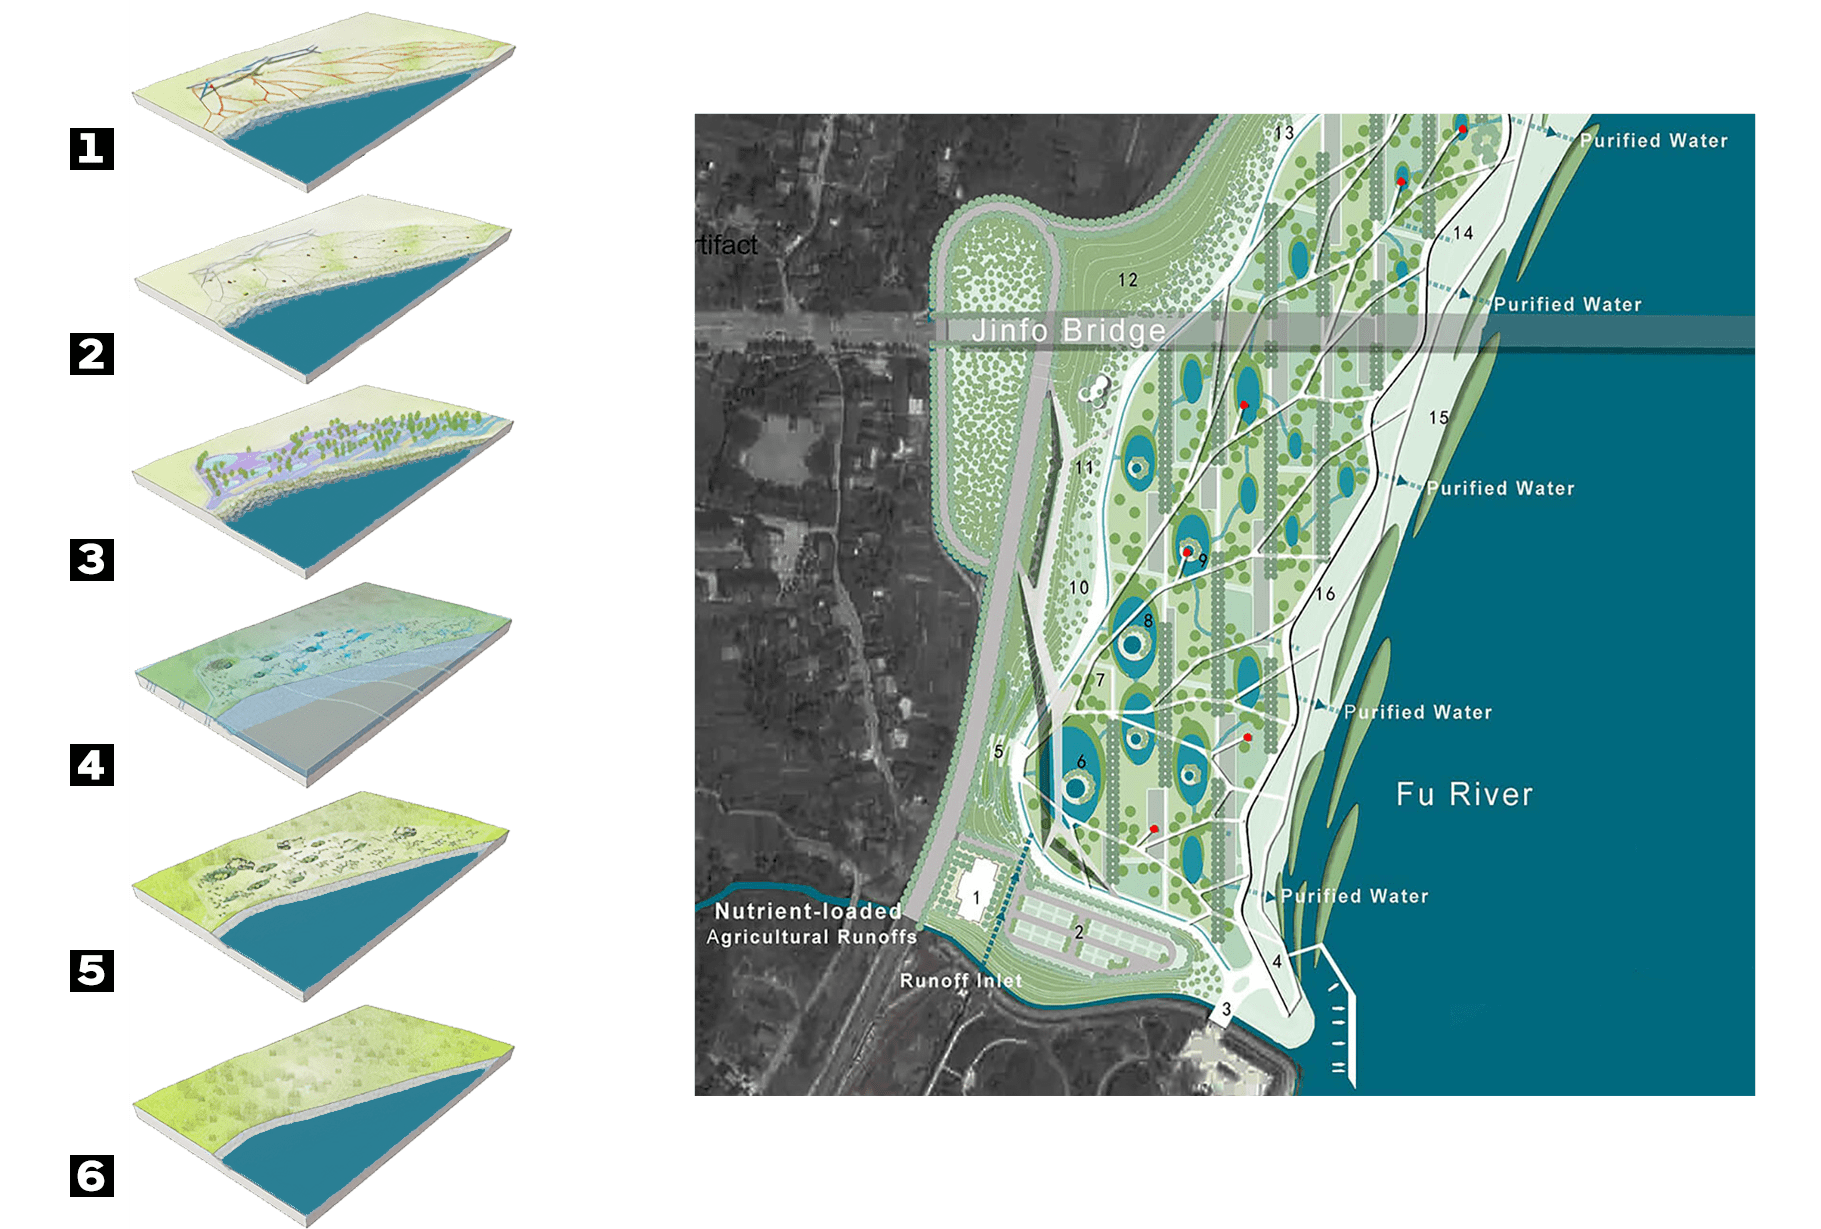 capas de diseño para la planificación del parque